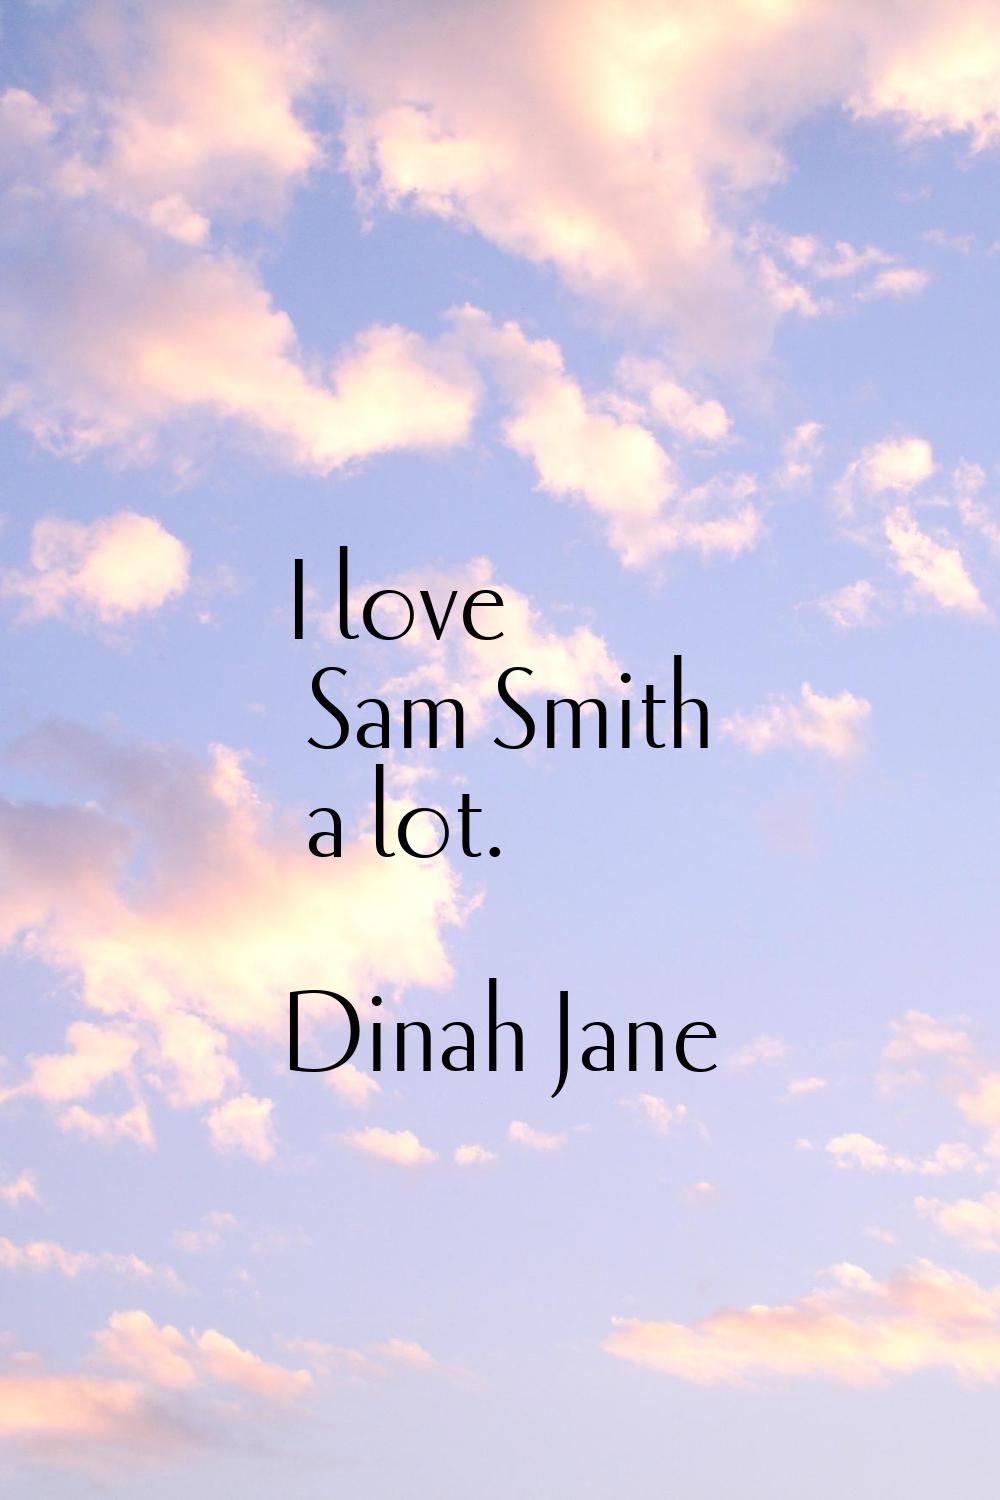 I love Sam Smith a lot.